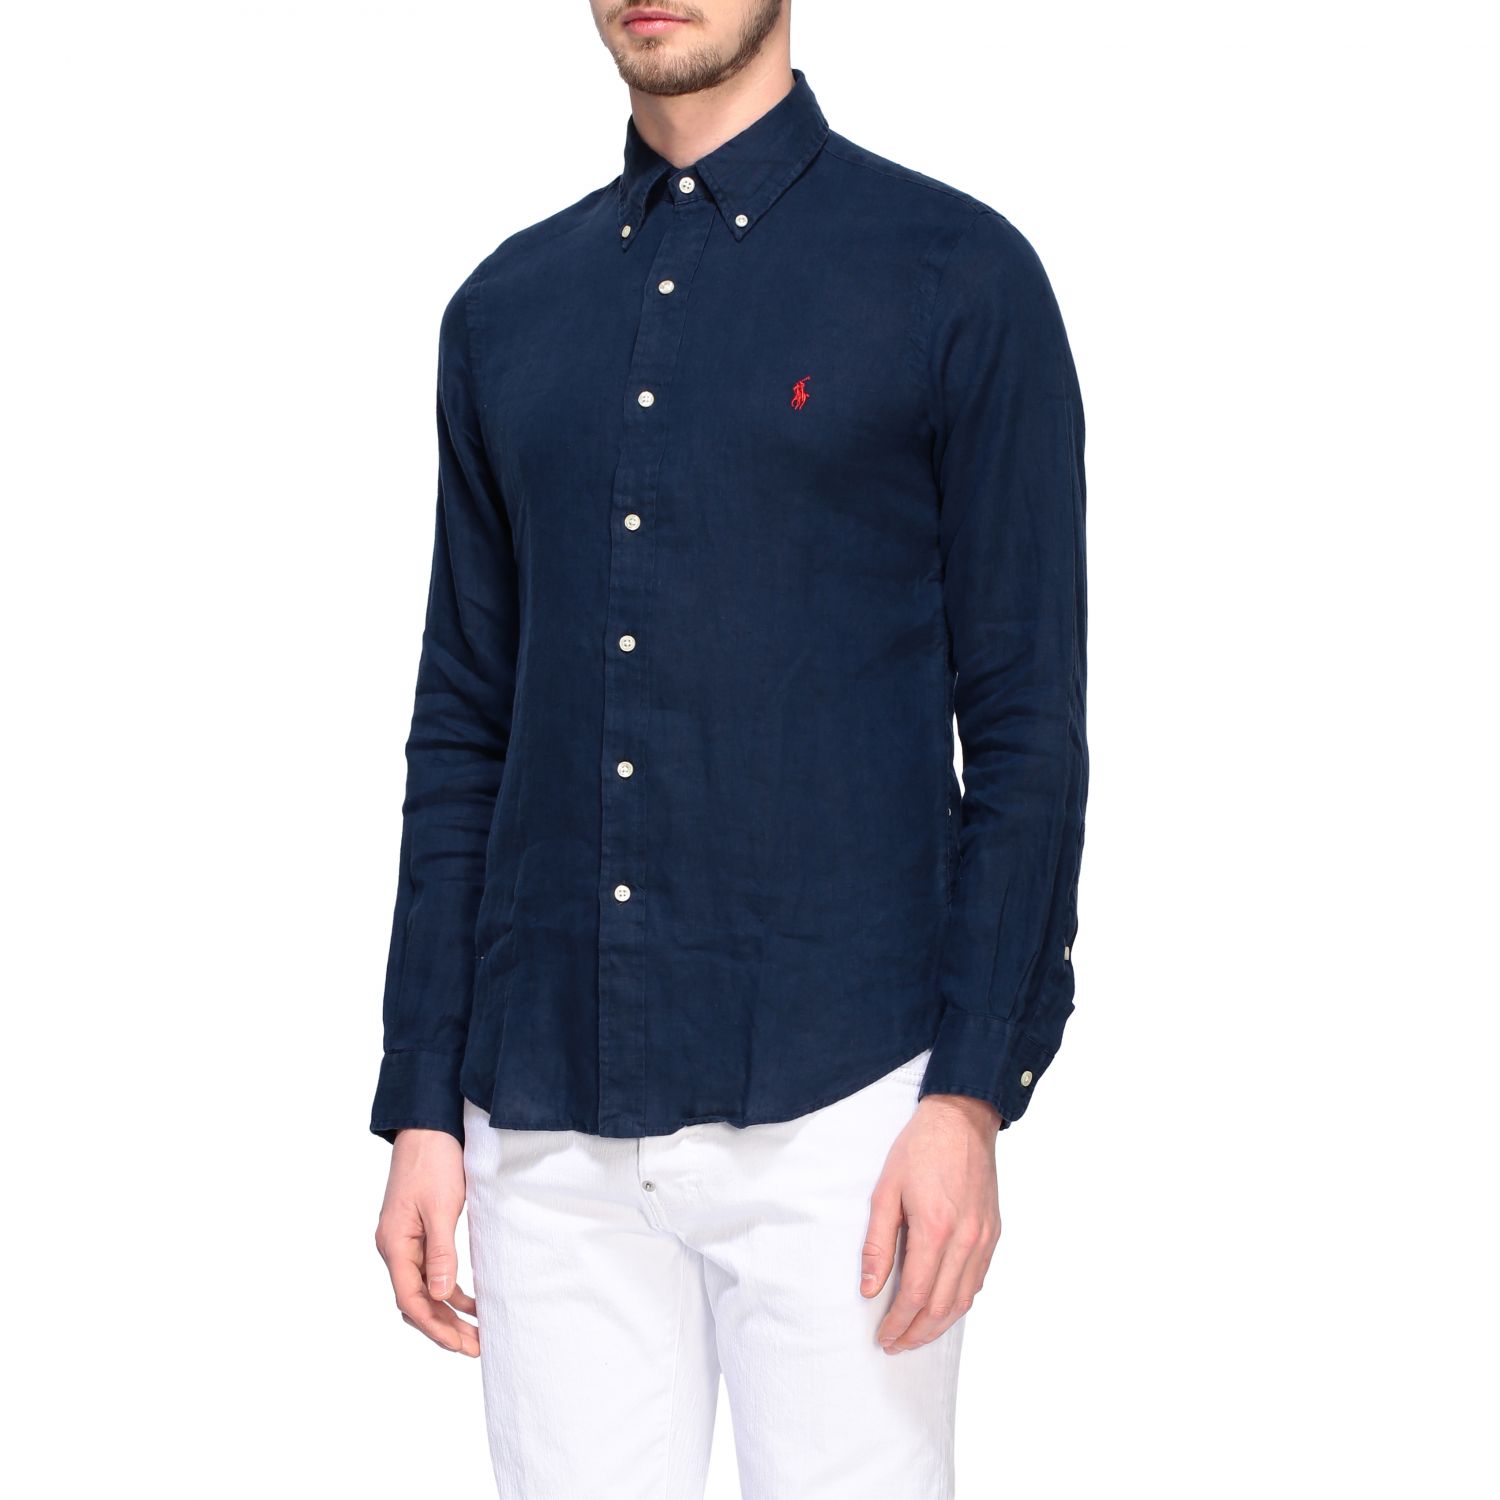 POLO RALPH LAUREN: linen shirt with button-down collar - Navy | Polo ...